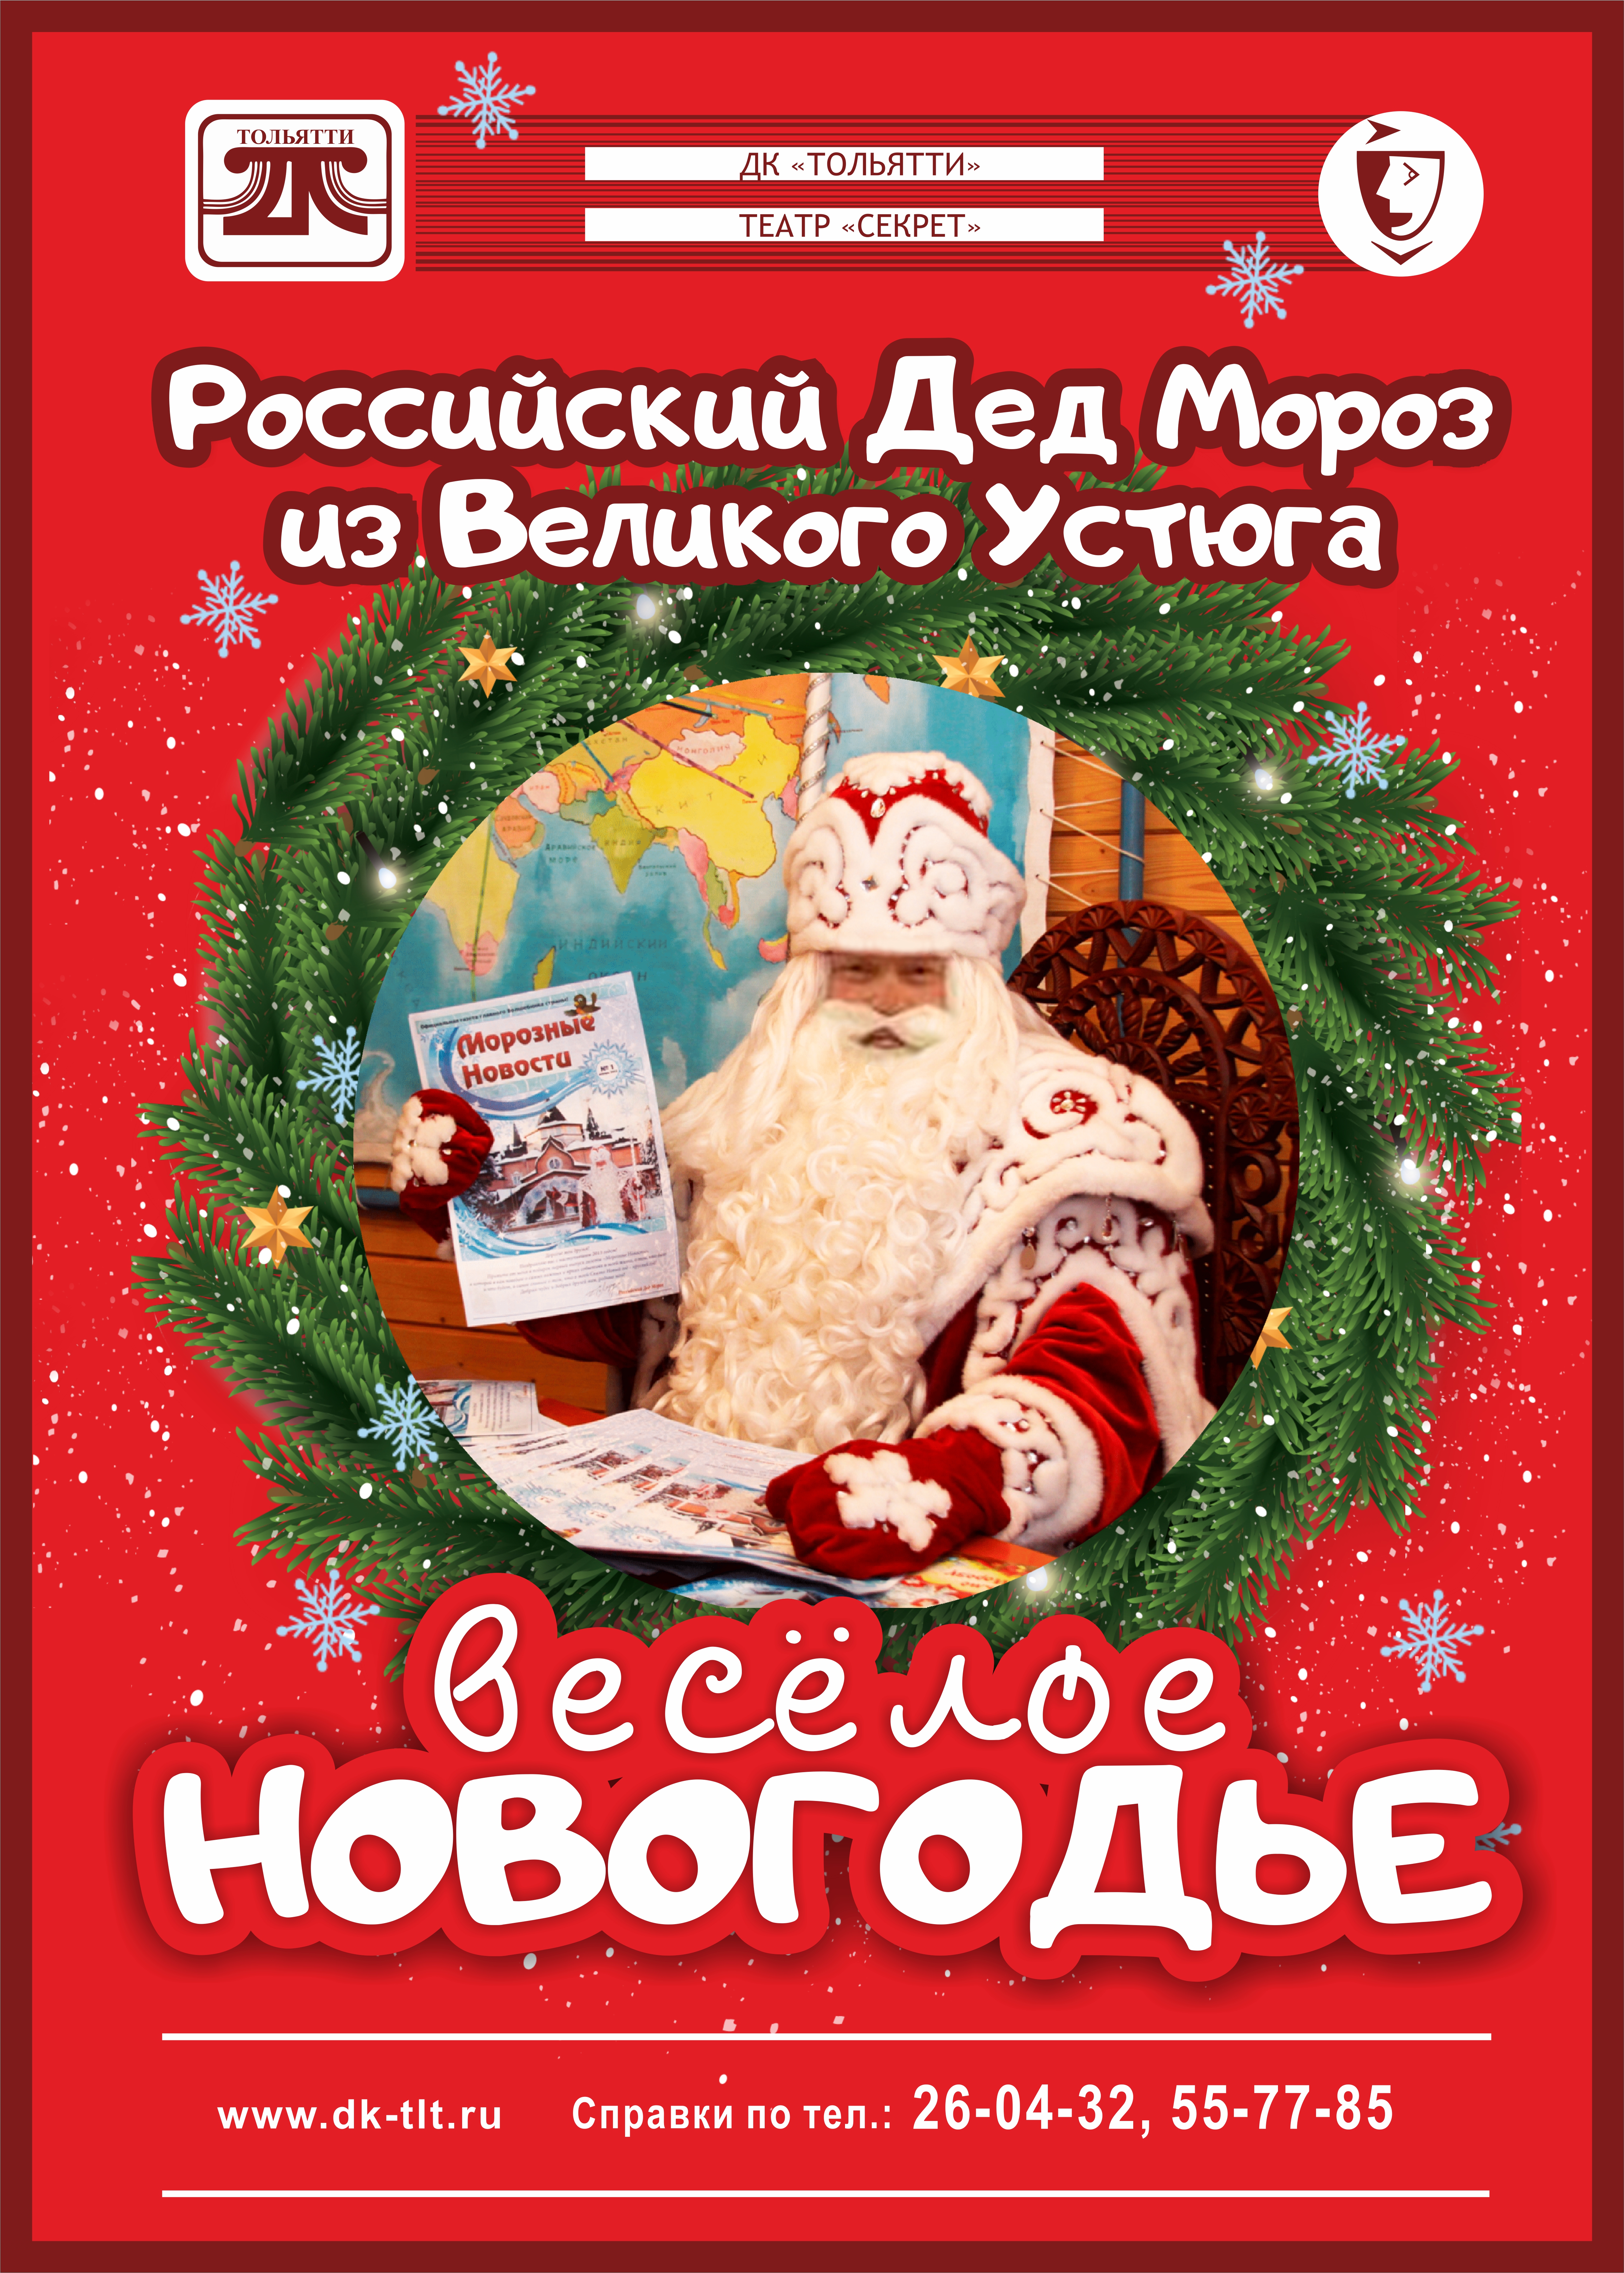 Российский Дед Мороз в ДК Тольятти